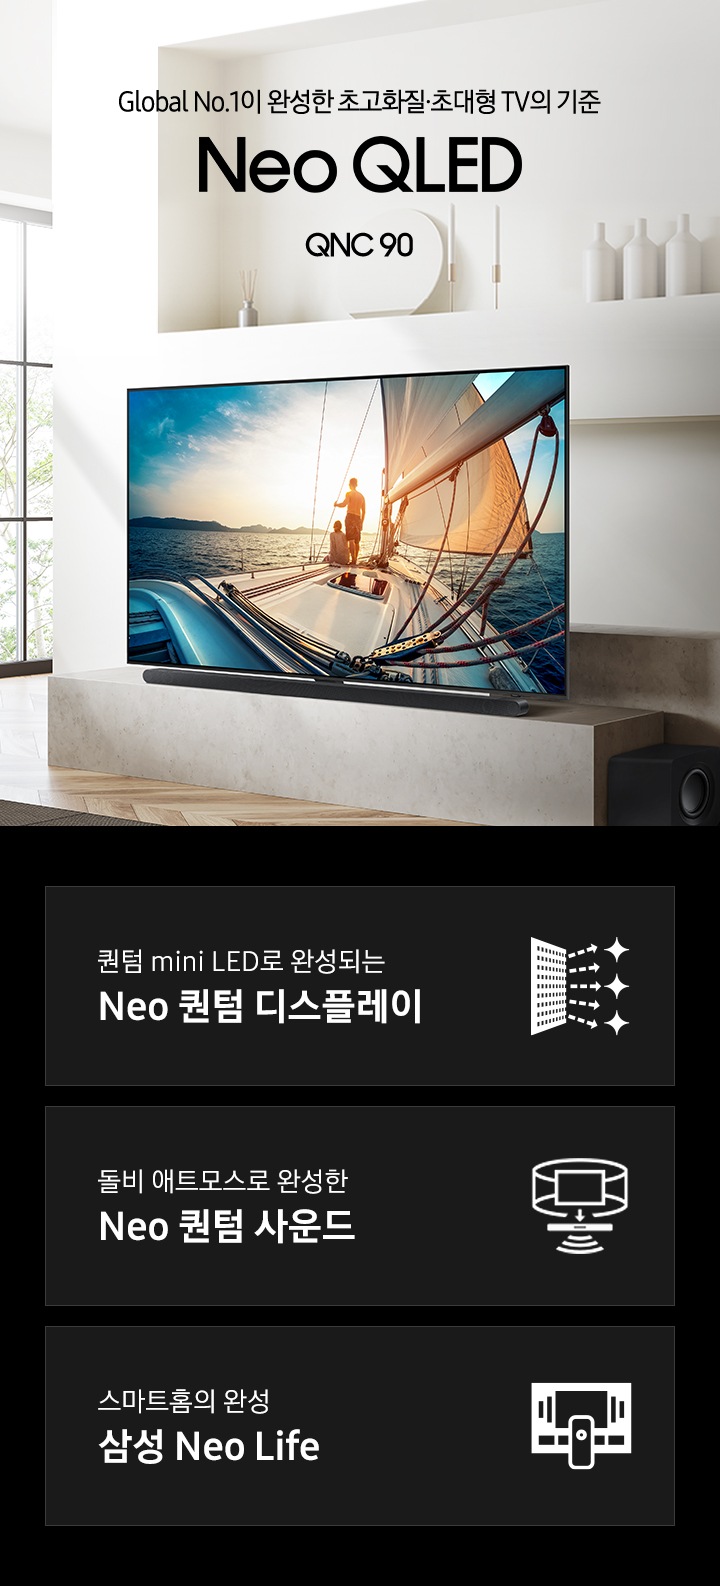 거실 좌측 벽면에 TV가 설치되어 있습니다. Global No.1이 만든 새로운 화질의 시작 QNC90 KV 입니다. 하단 3 POD 에는 퀀텀 mini LED로 완성되는 Neo 퀀텀 디스플레이 문구와 반짝이는 디스플레이 아이콘, 돌비 애트모스로 완성한 Neo 퀀텀 사운드 문구와 TV 아이콘에서 사운드 음파를 표현한 아이콘, 스마트홈의 완성 삼성 Neo Life 문구와 TV와 리모컨, TV 속 컨텐츠들을 표현한 아이콘이 있습니다. 